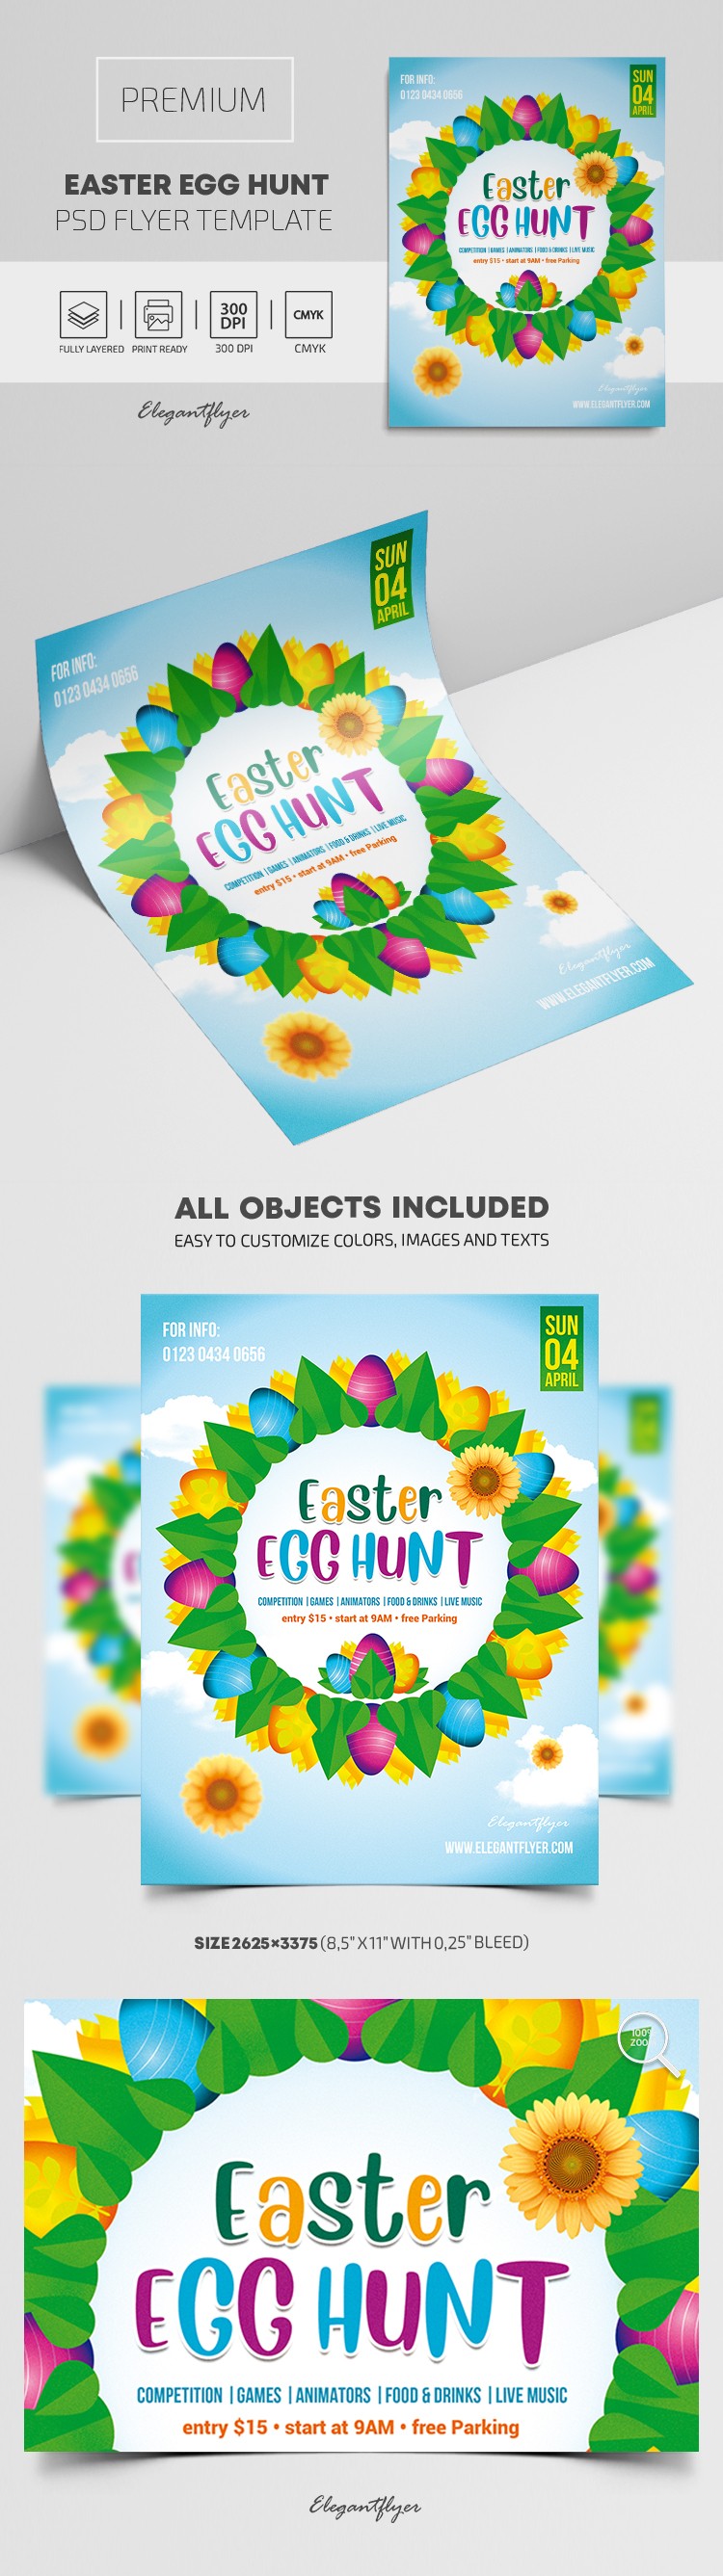 Plakat związkowy z poszukiwaniem wielkanocnych jajek by ElegantFlyer